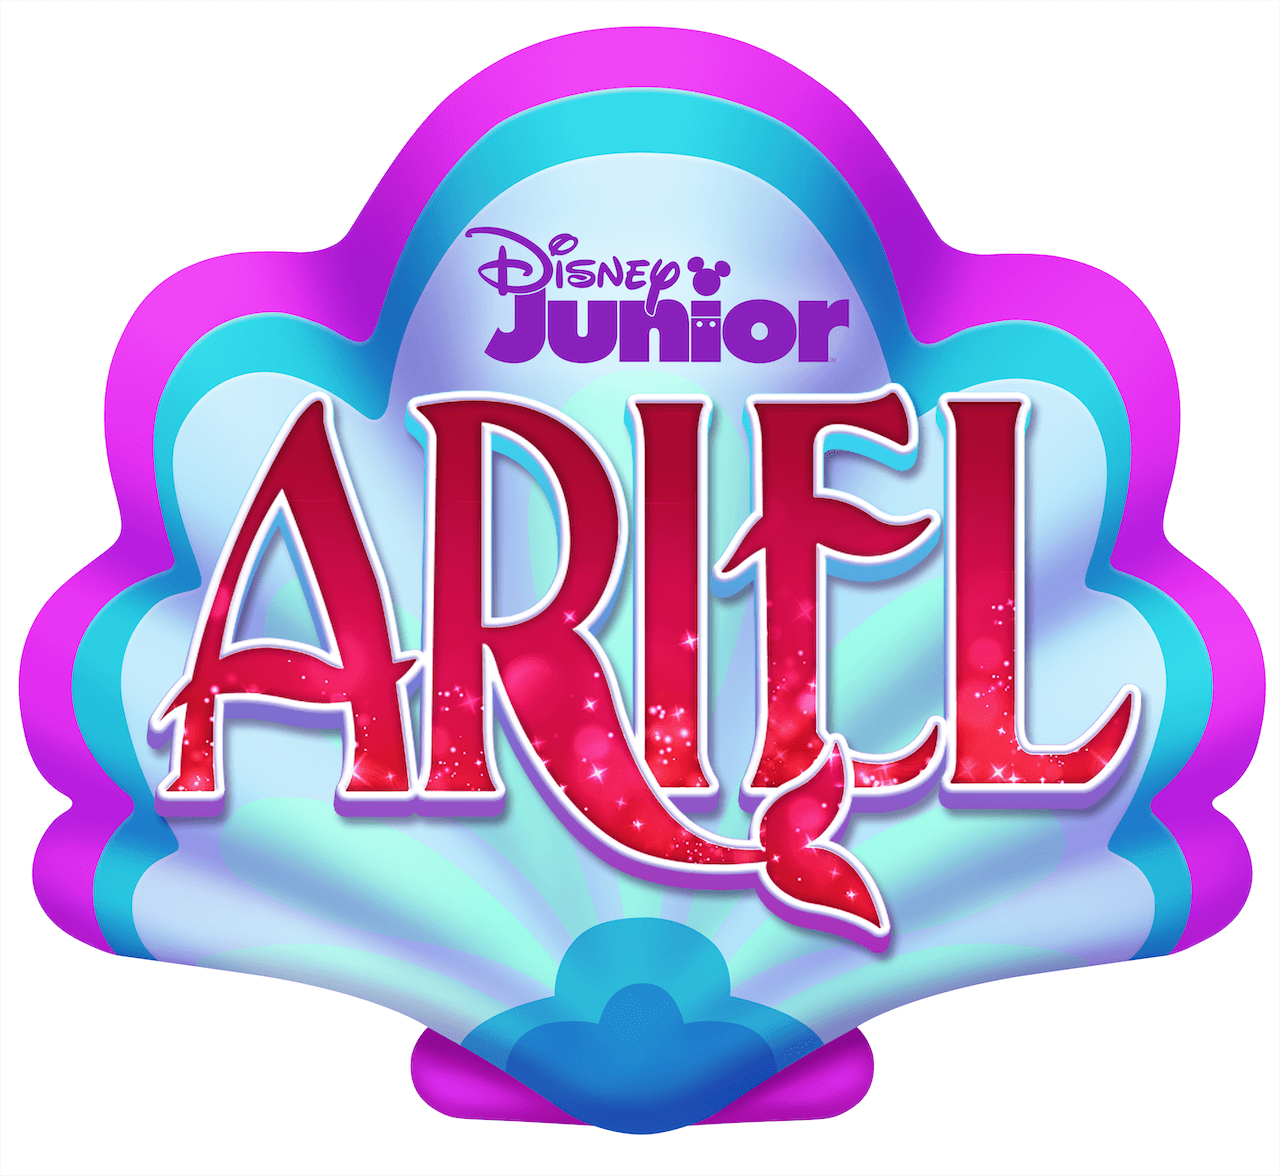 Disney Junior’s “Ariel” Series Announced What's On Disney Plus